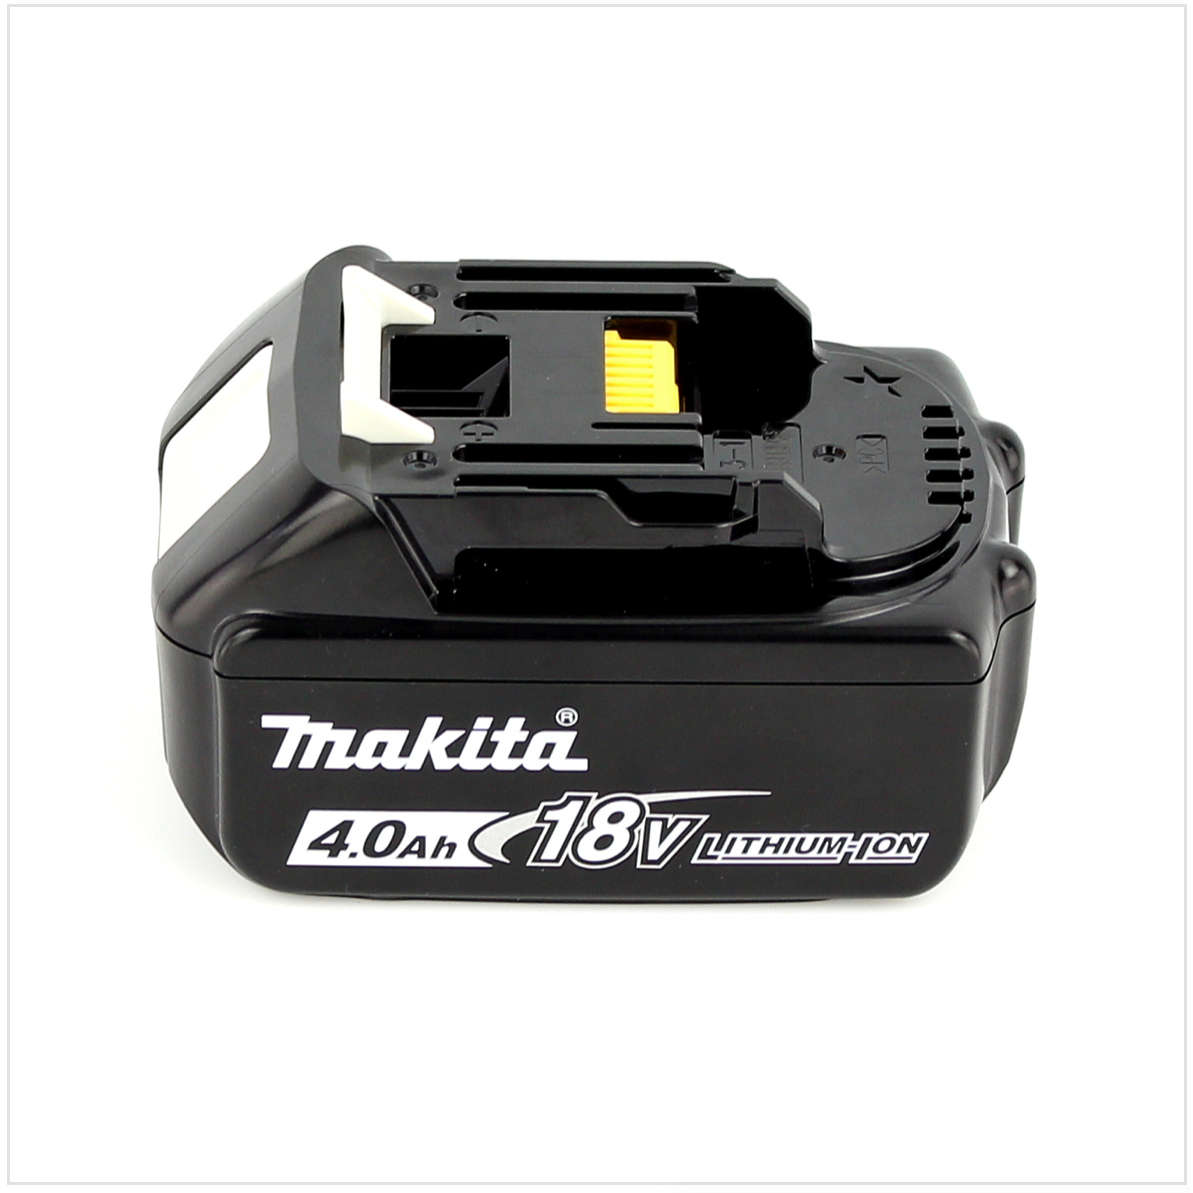 Makita DTW 190 M1J 18V Li-Ion Boulonneuse à chocs sans fil + Boîtier Makpac + 1x Batterie BL 1840 B 4,0 Ah avec voyeur LED - sans Chargeur 3